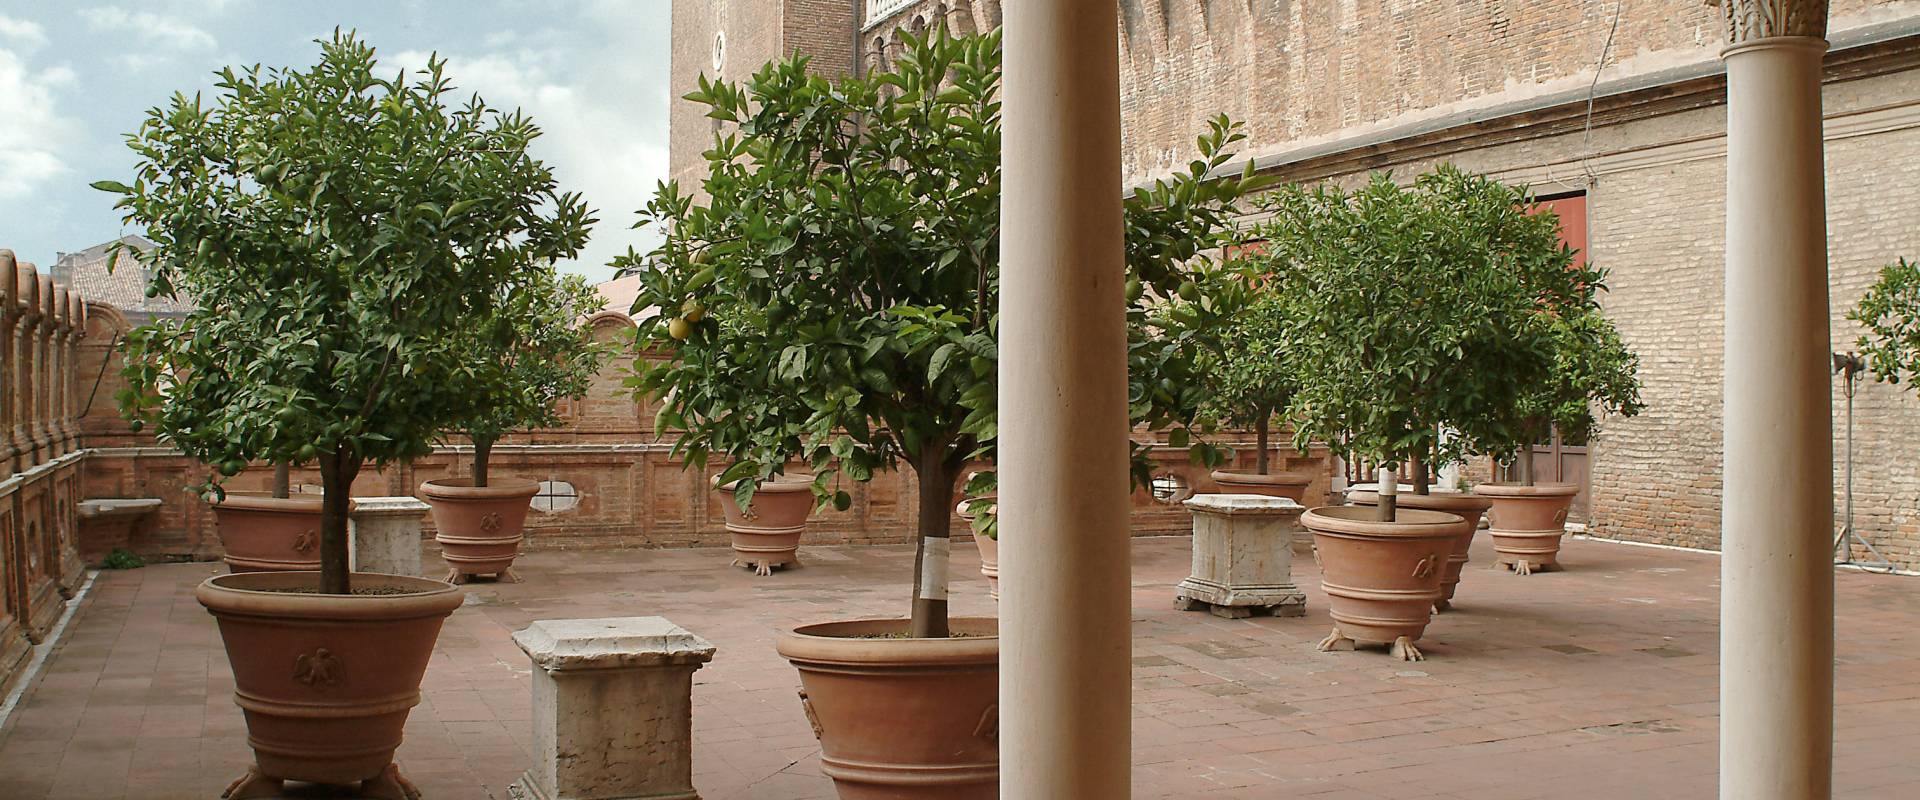 Castello Estense. Giardino degli Aranci foto di Baraldi